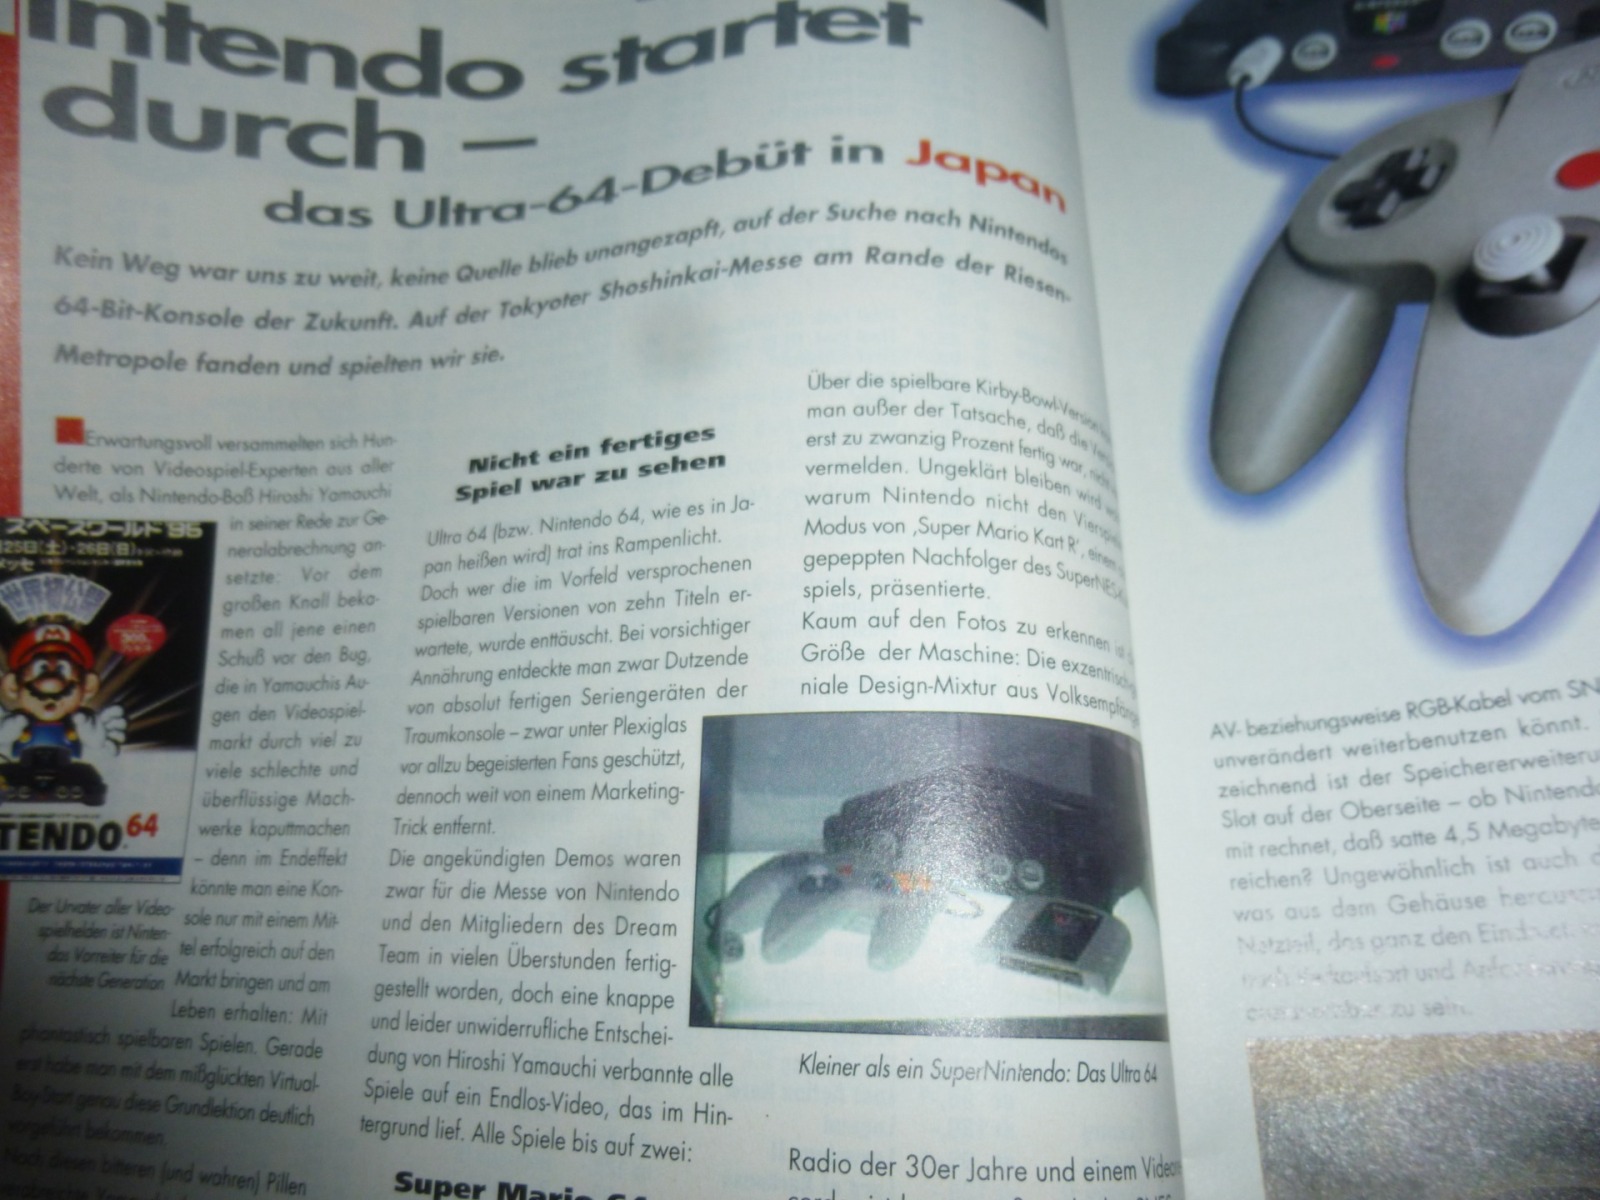 TOTAL Das unabhängige Magazin - 100% Nintendo - Ausgabe 2/96 1996 5